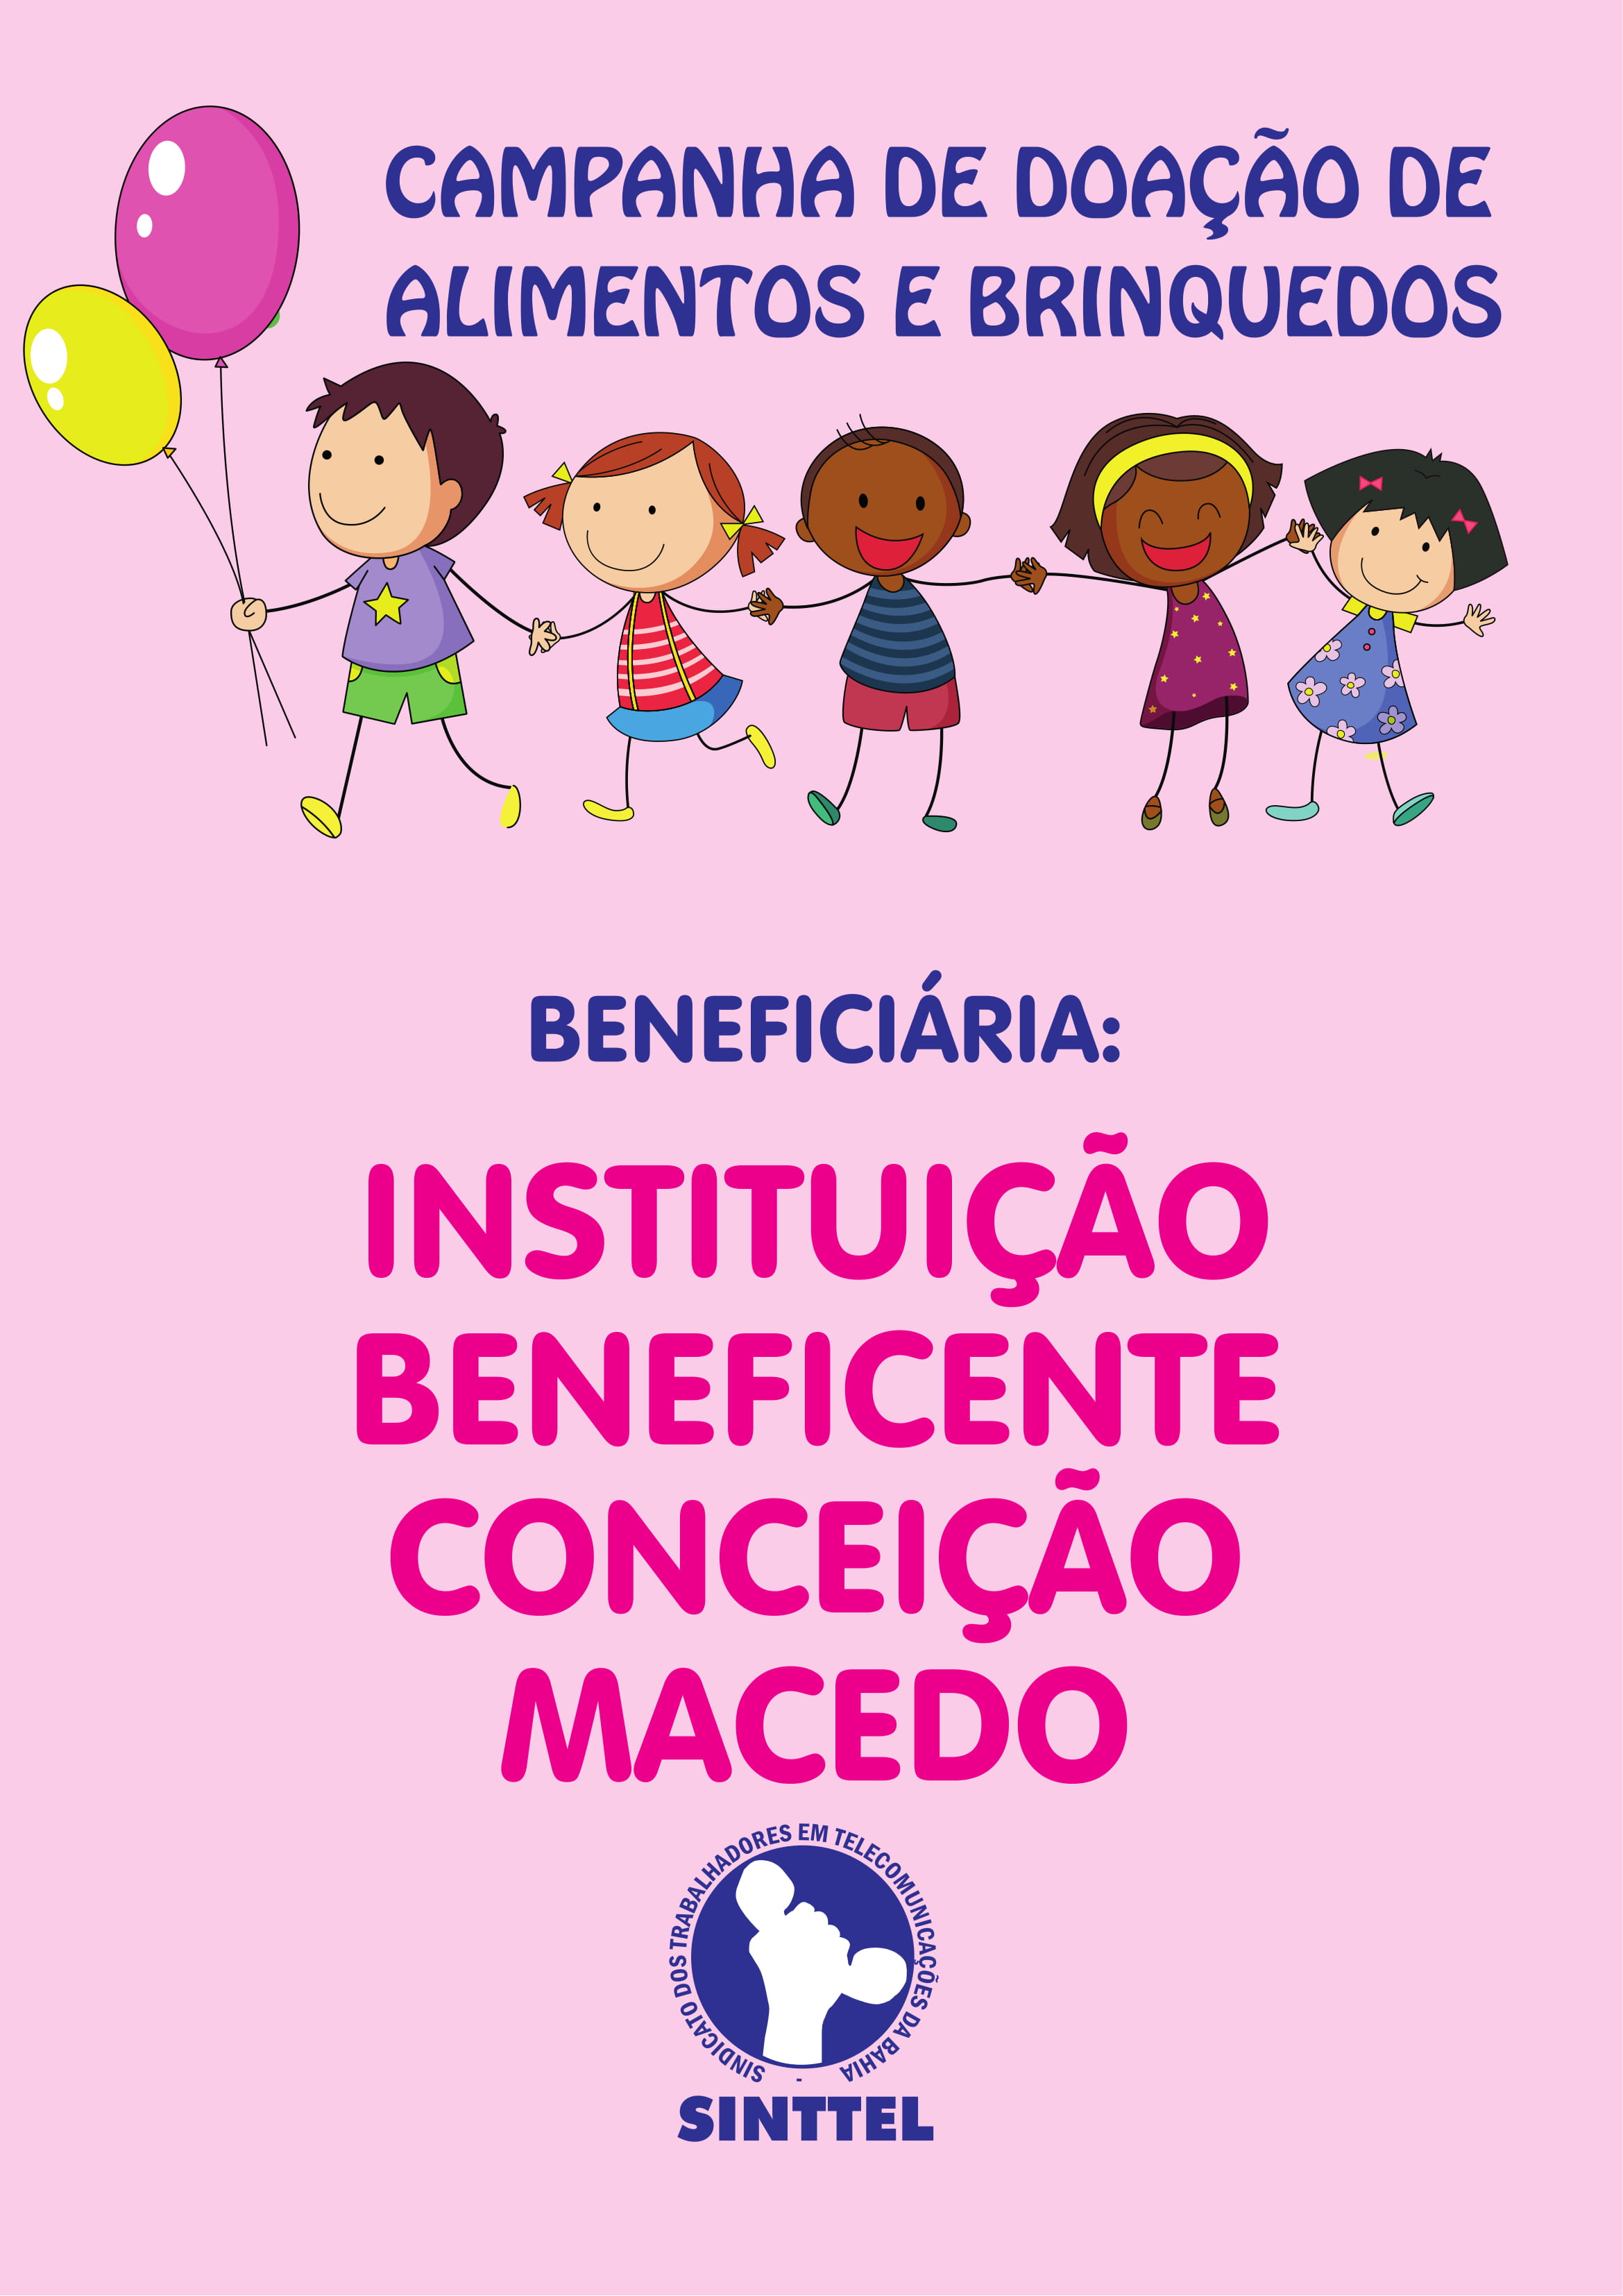 Sinttel inicia campanha de doação para a Instituição Beneficente Conceição Macedo